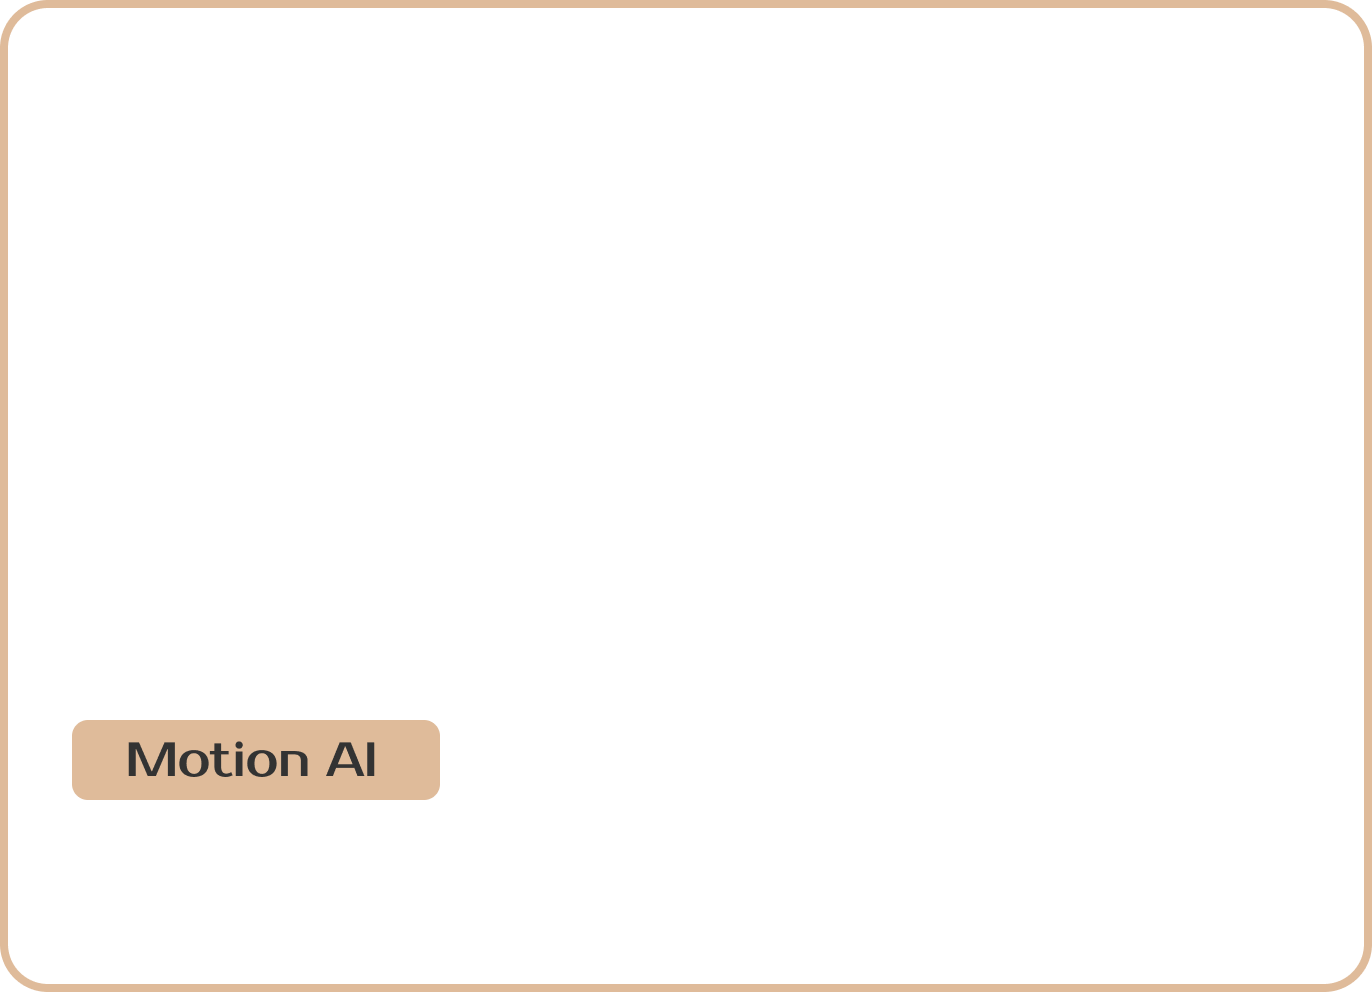 AI Motion Profile theme image